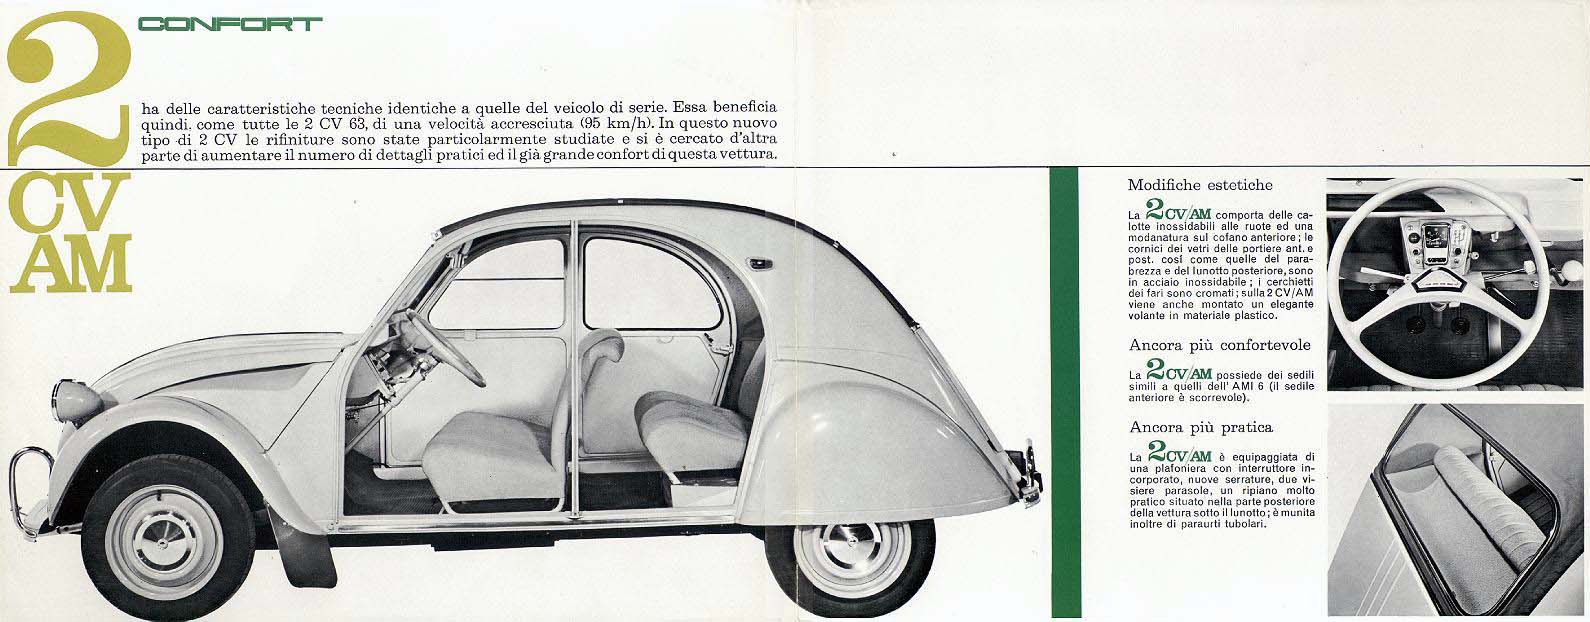 Brochure italiana della Citroen 2CV AZAM di fine 1963 pagina 2 - 3